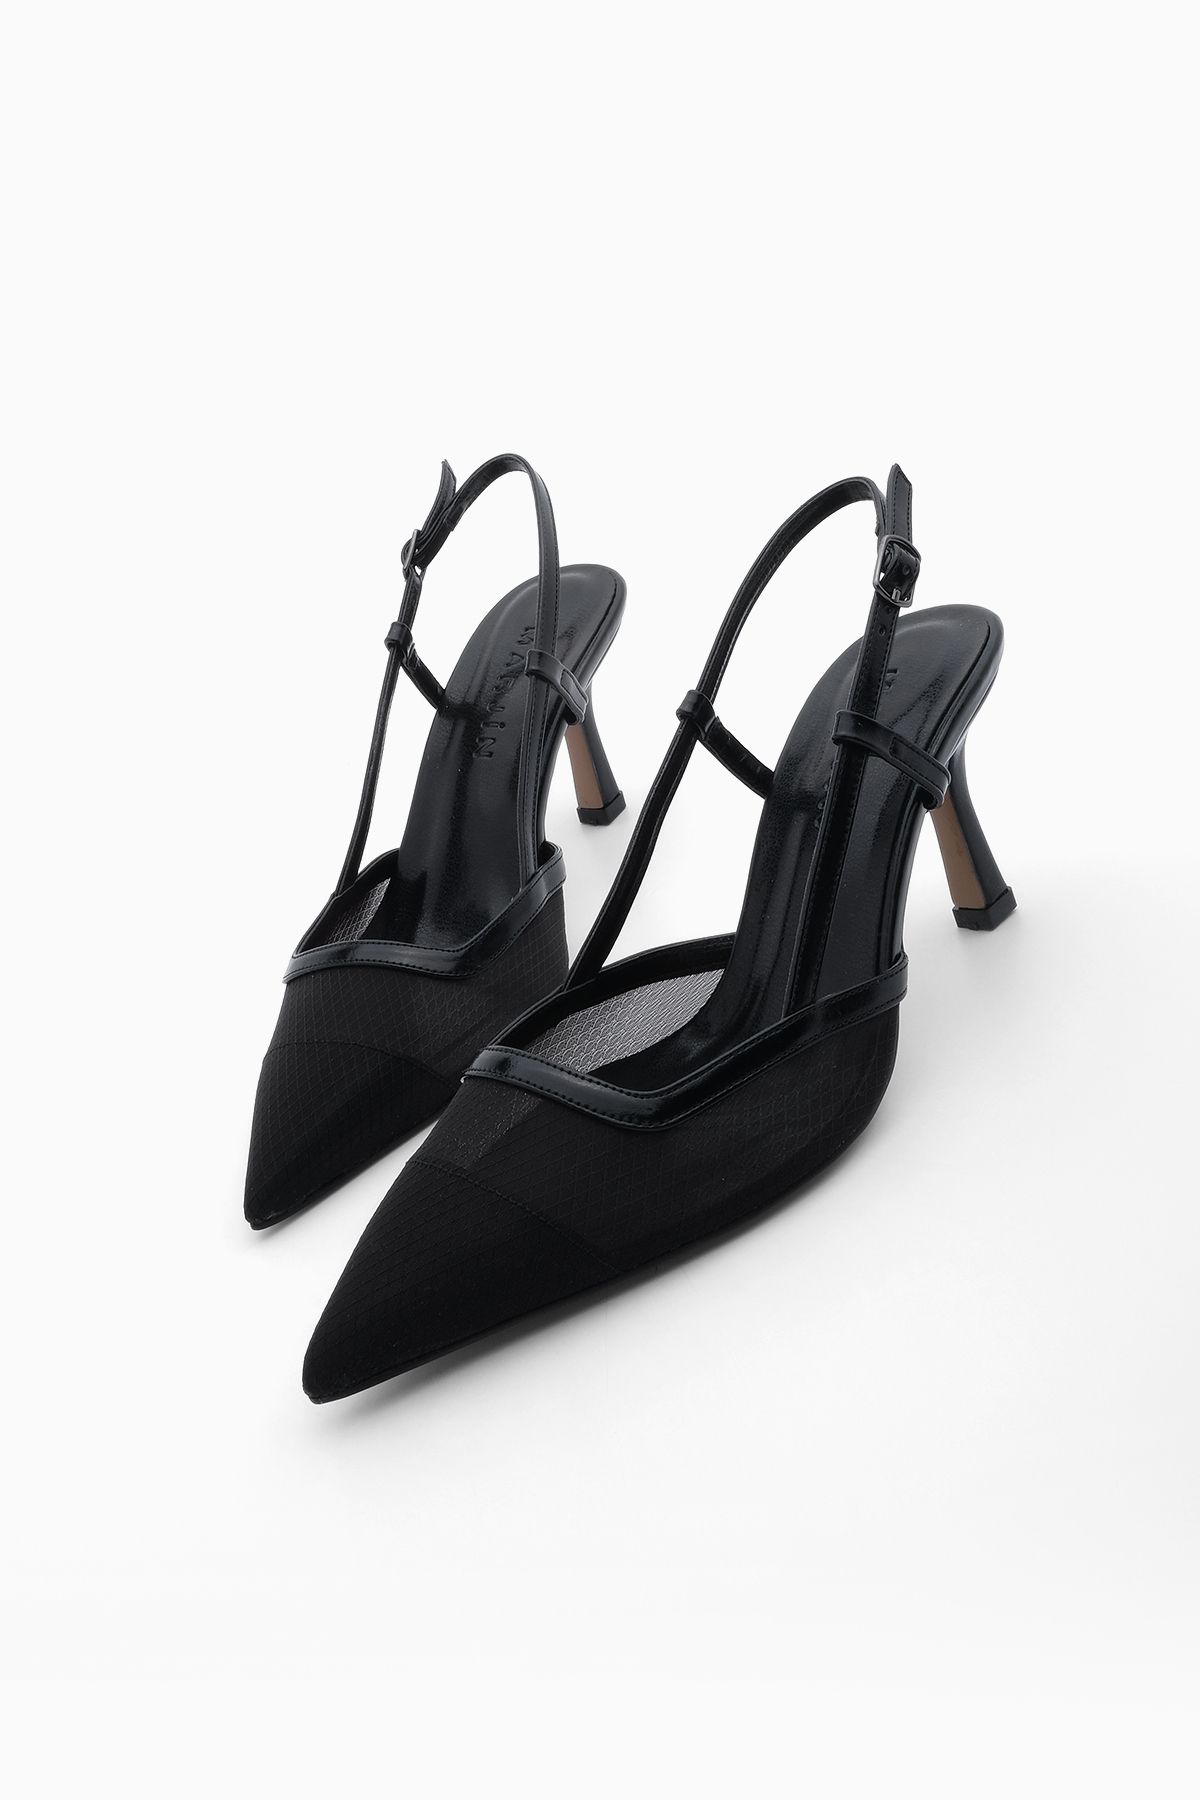 Marjin Kadın Sivri Burun Atkılı Fileli Klasik Topuklu Ayakkabı Mites Siyah